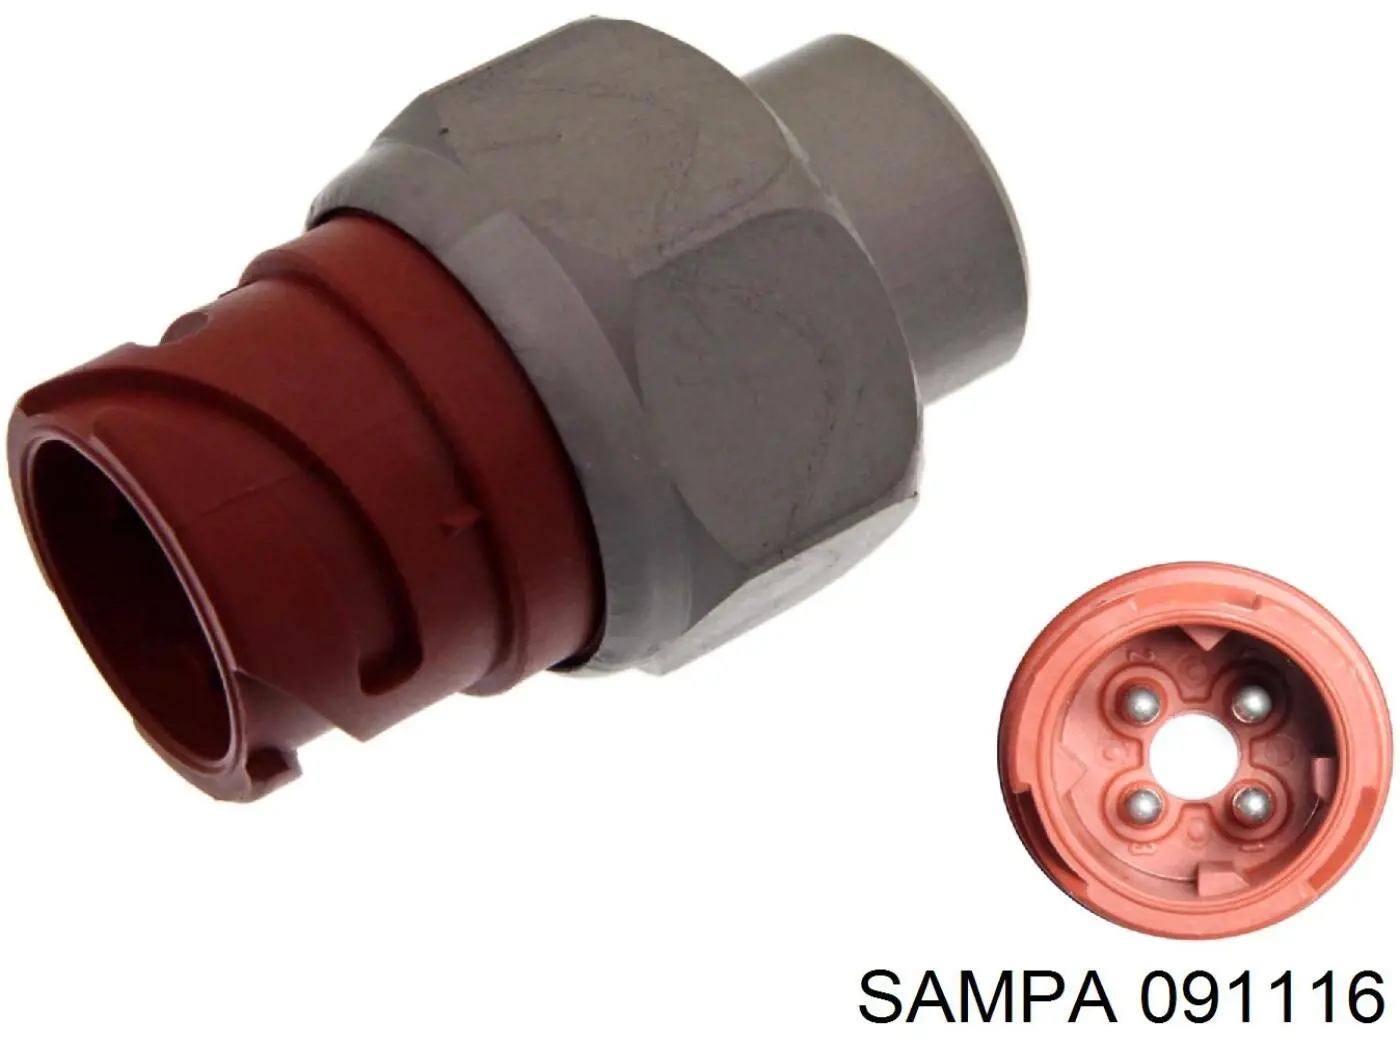 091.116 Sampa Otomotiv‏ датчик давления тормозной жидкости